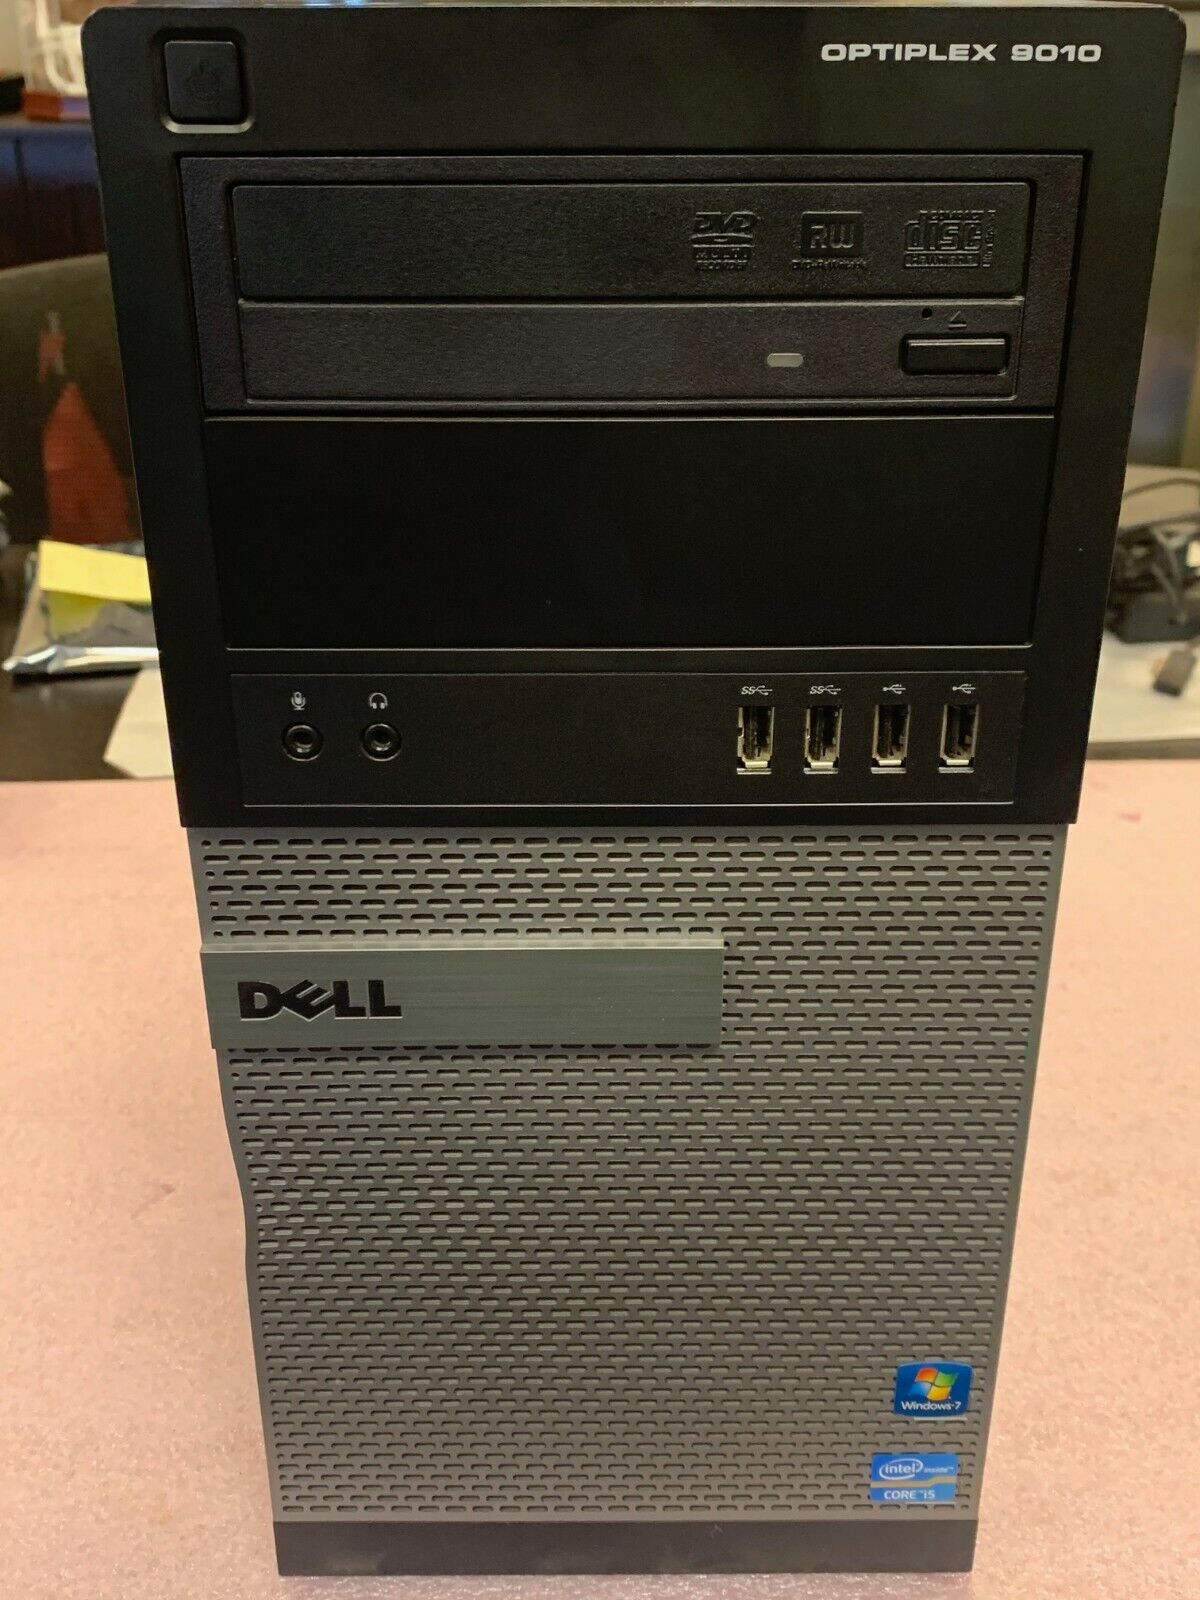 Dell Optiplex 9010 Tower (Intel Core i5-3470 CPU, 8GB RAM, 500GB HDD)